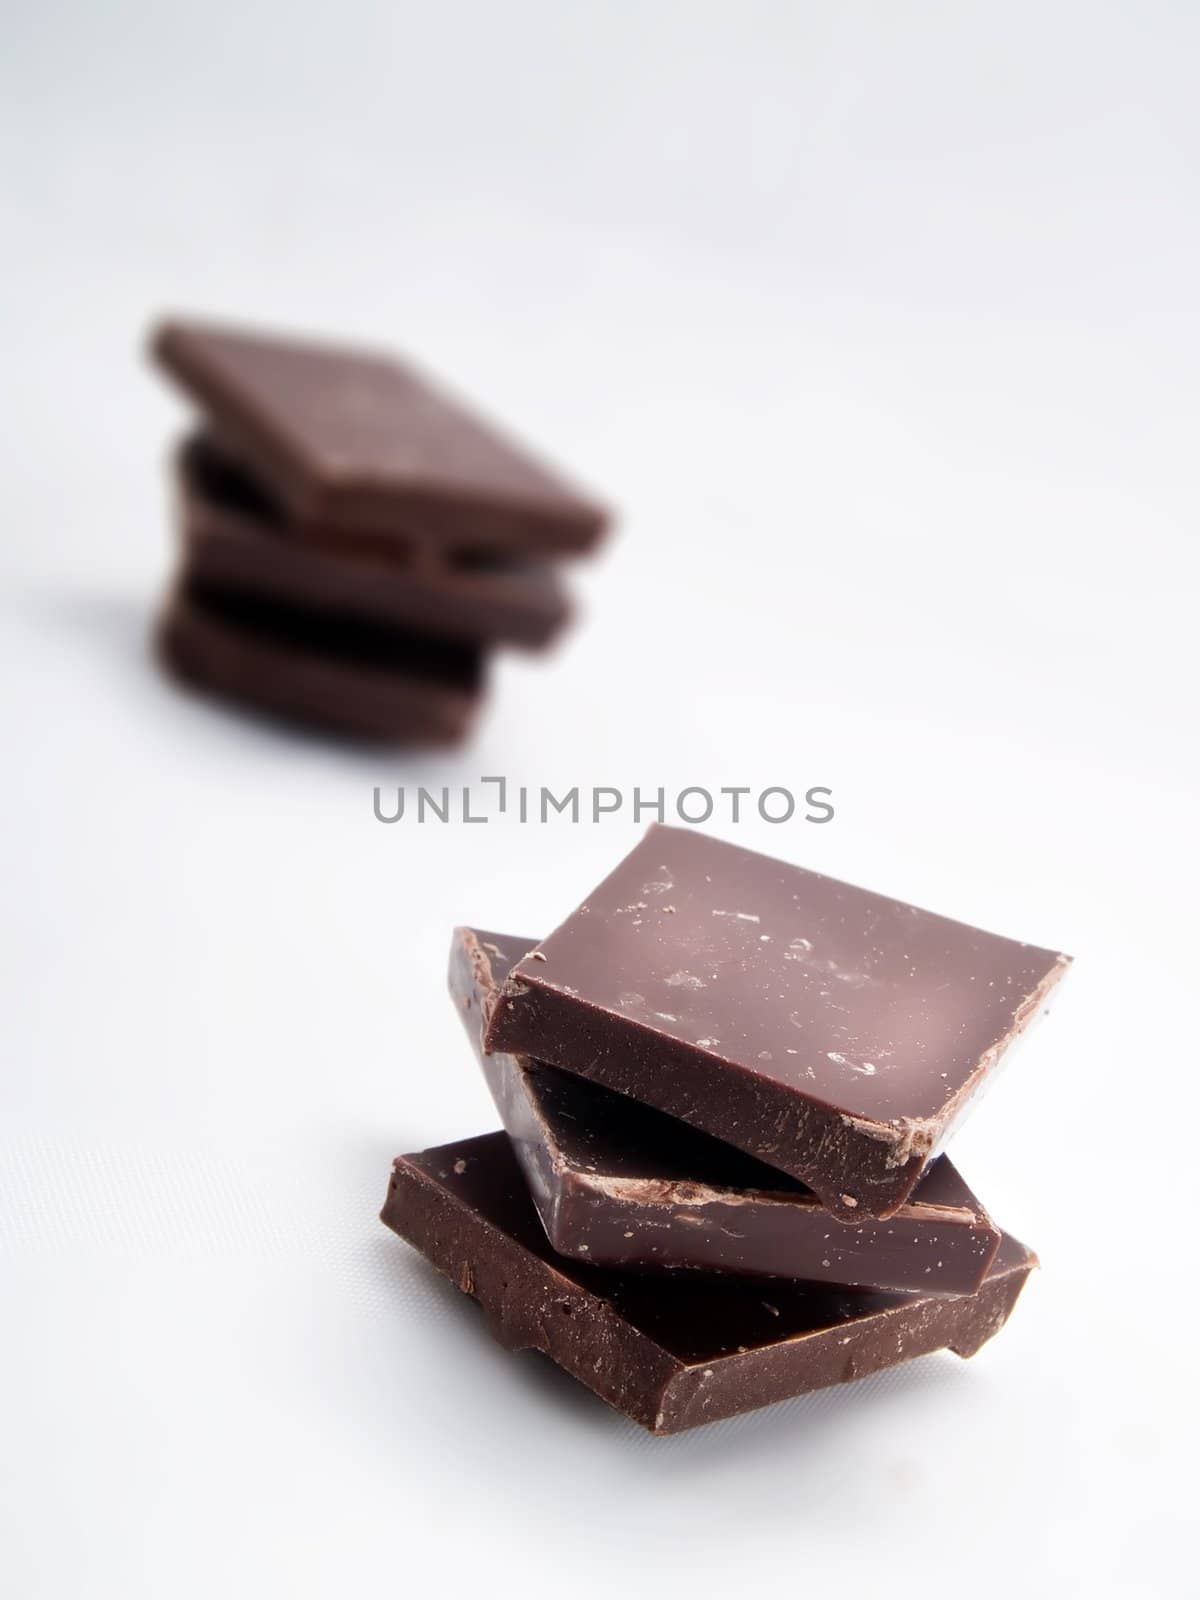 Chocolate by henrischmit